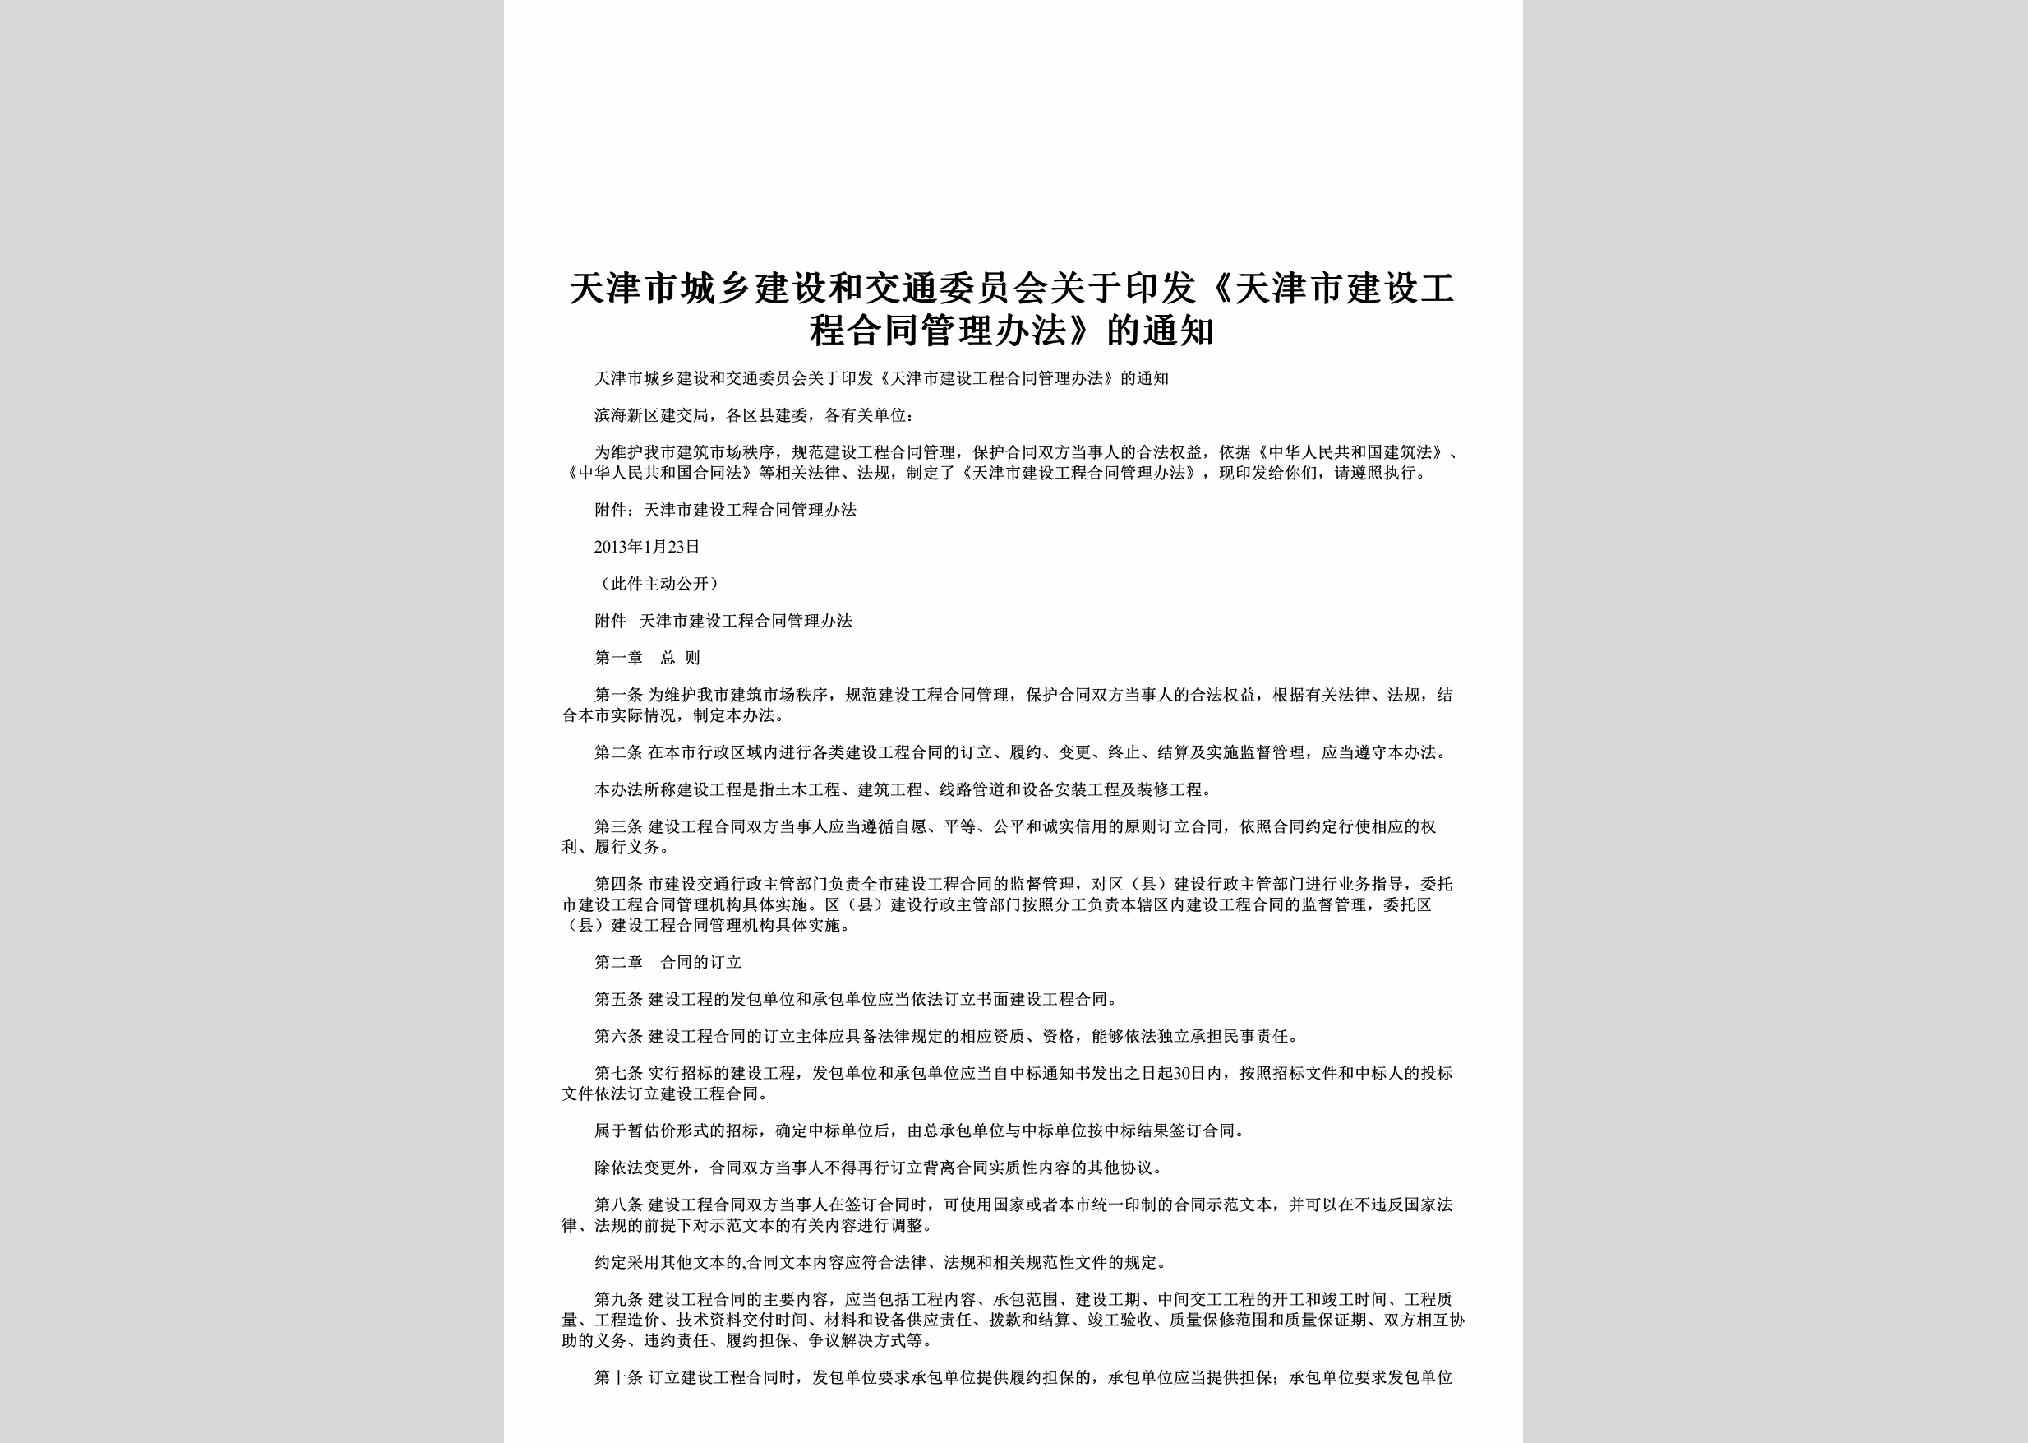 TJ-GCHTGLBF-2013：关于印发《天津市建设工程合同管理办法》的通知